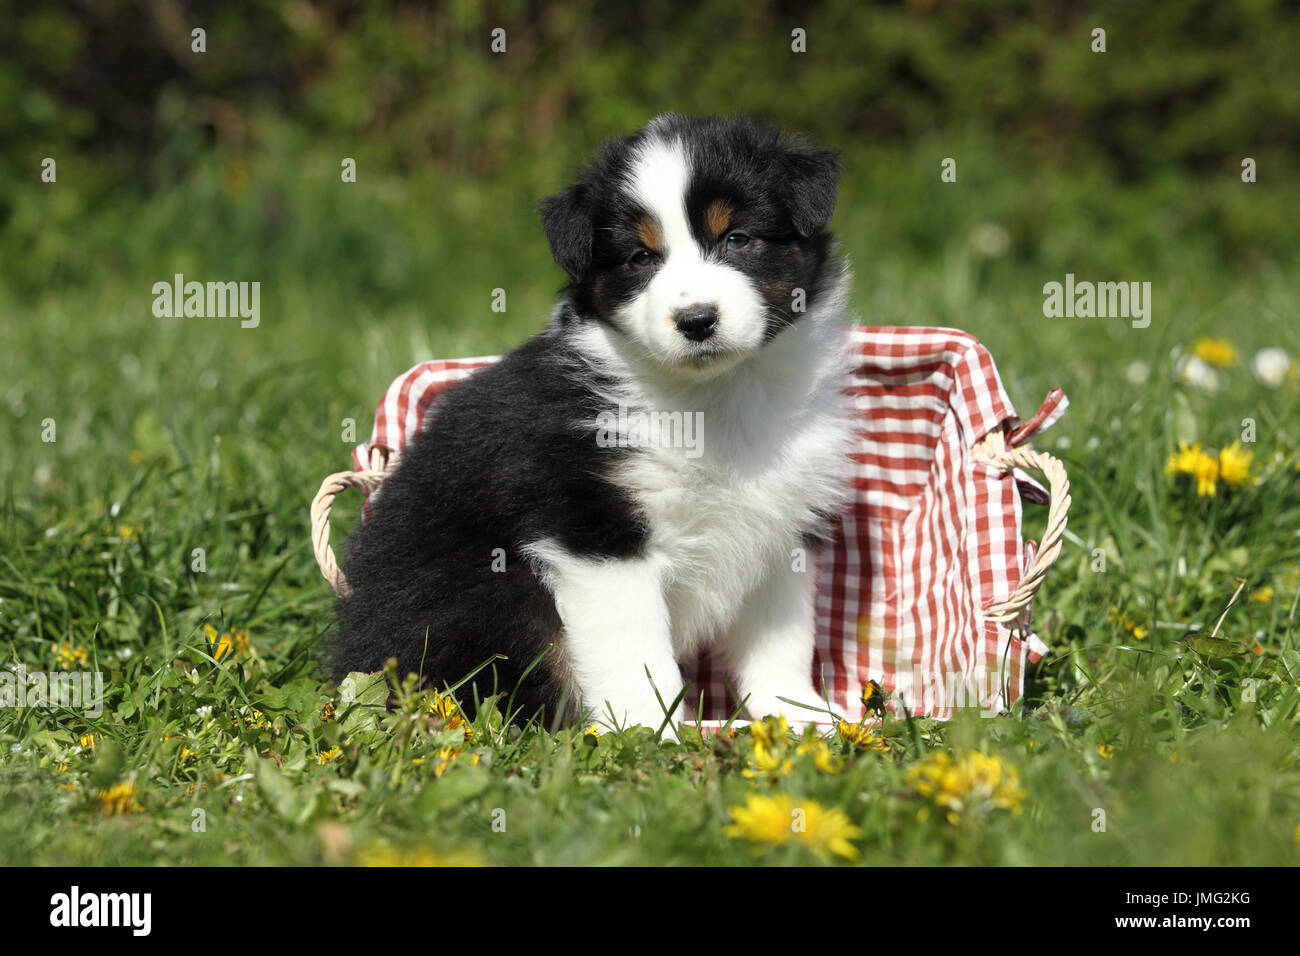 Australian Shepherd. Puppy (5 weeks old) sitting in a basket in grass. Germany Stock Photo